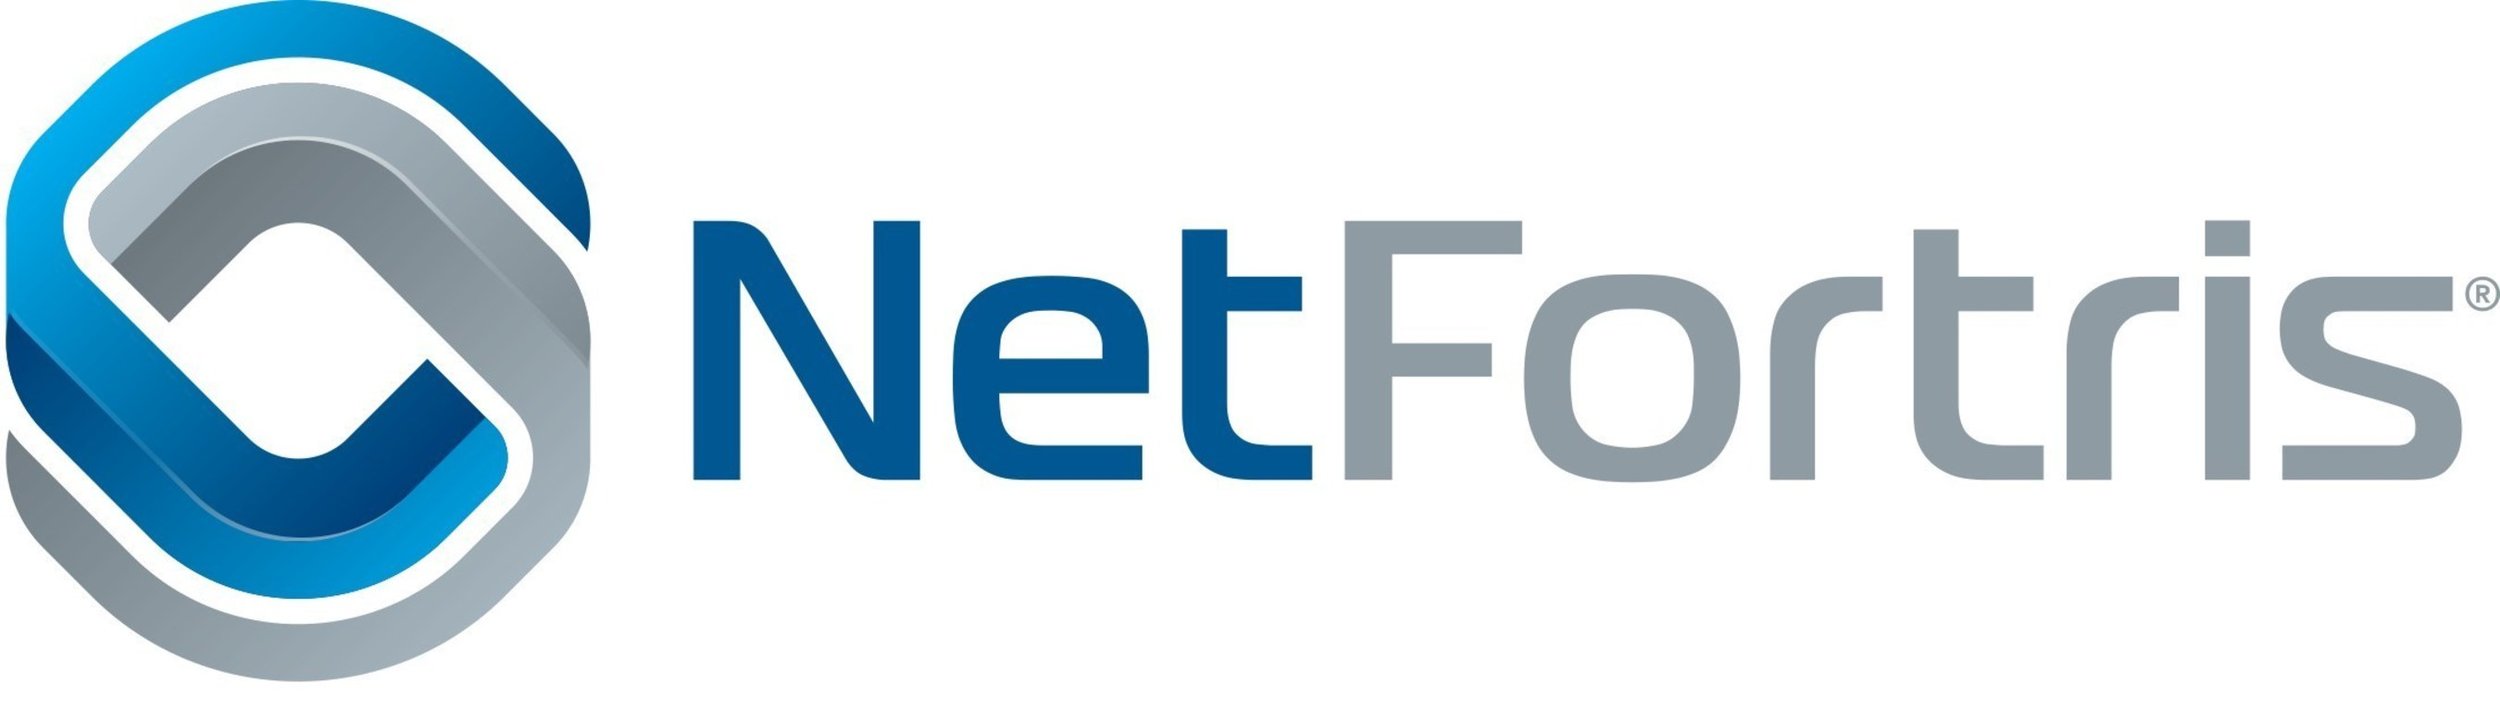 NetFortis-Logo.jpg